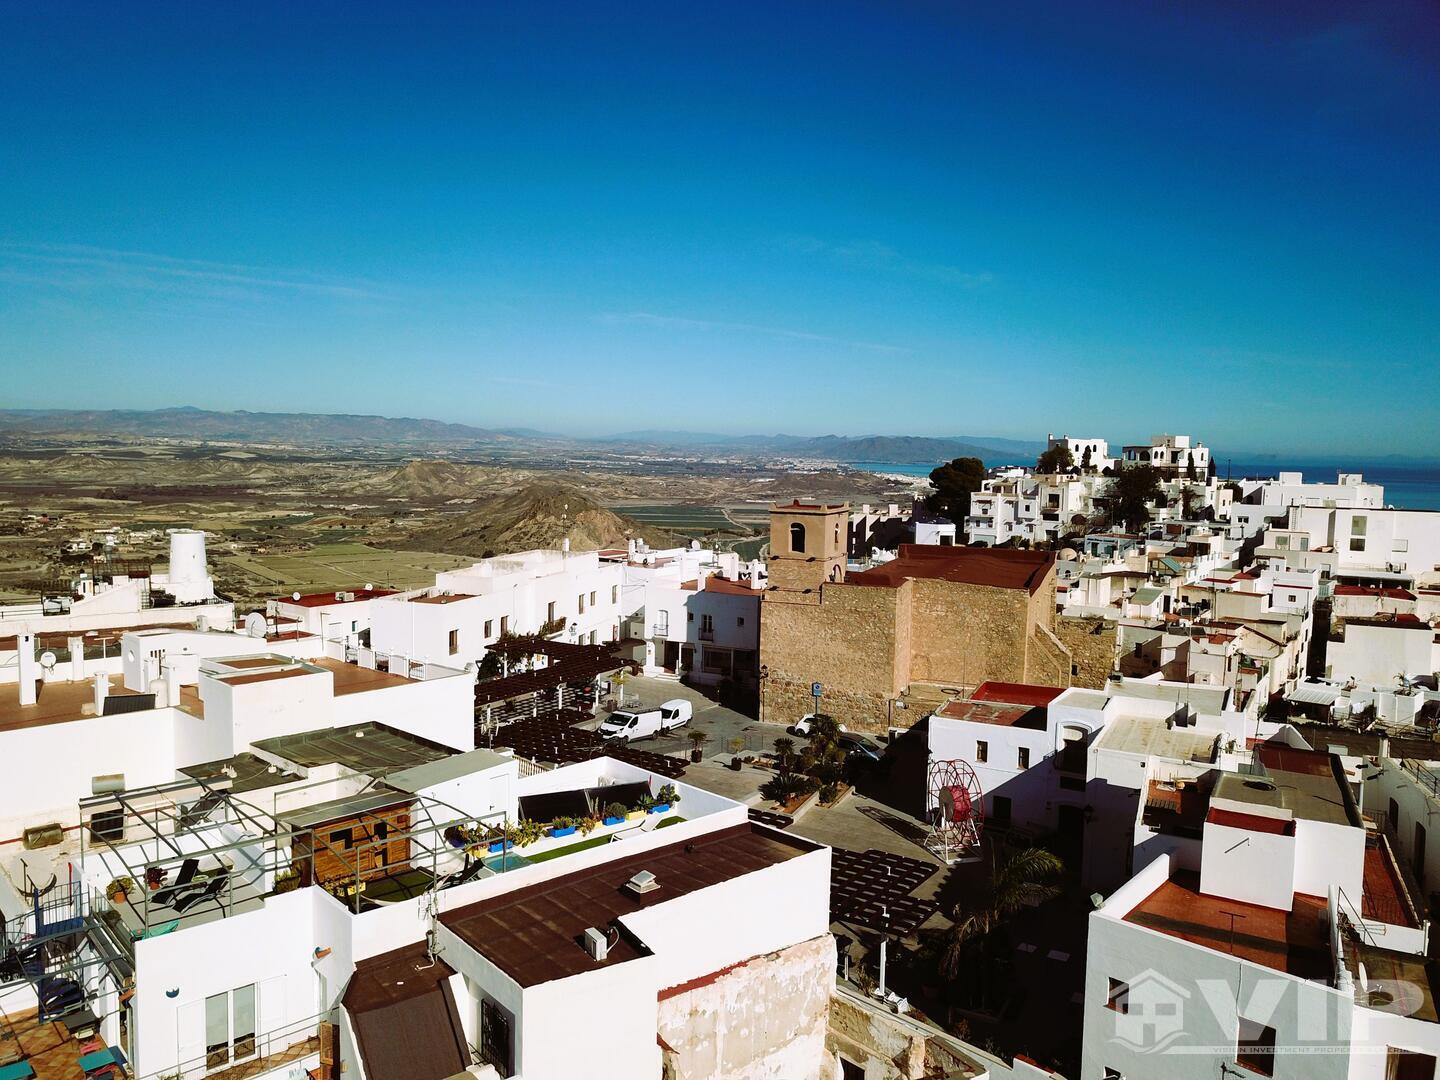 VIP8106: Townhouse for Sale in Mojacar Pueblo, Almería